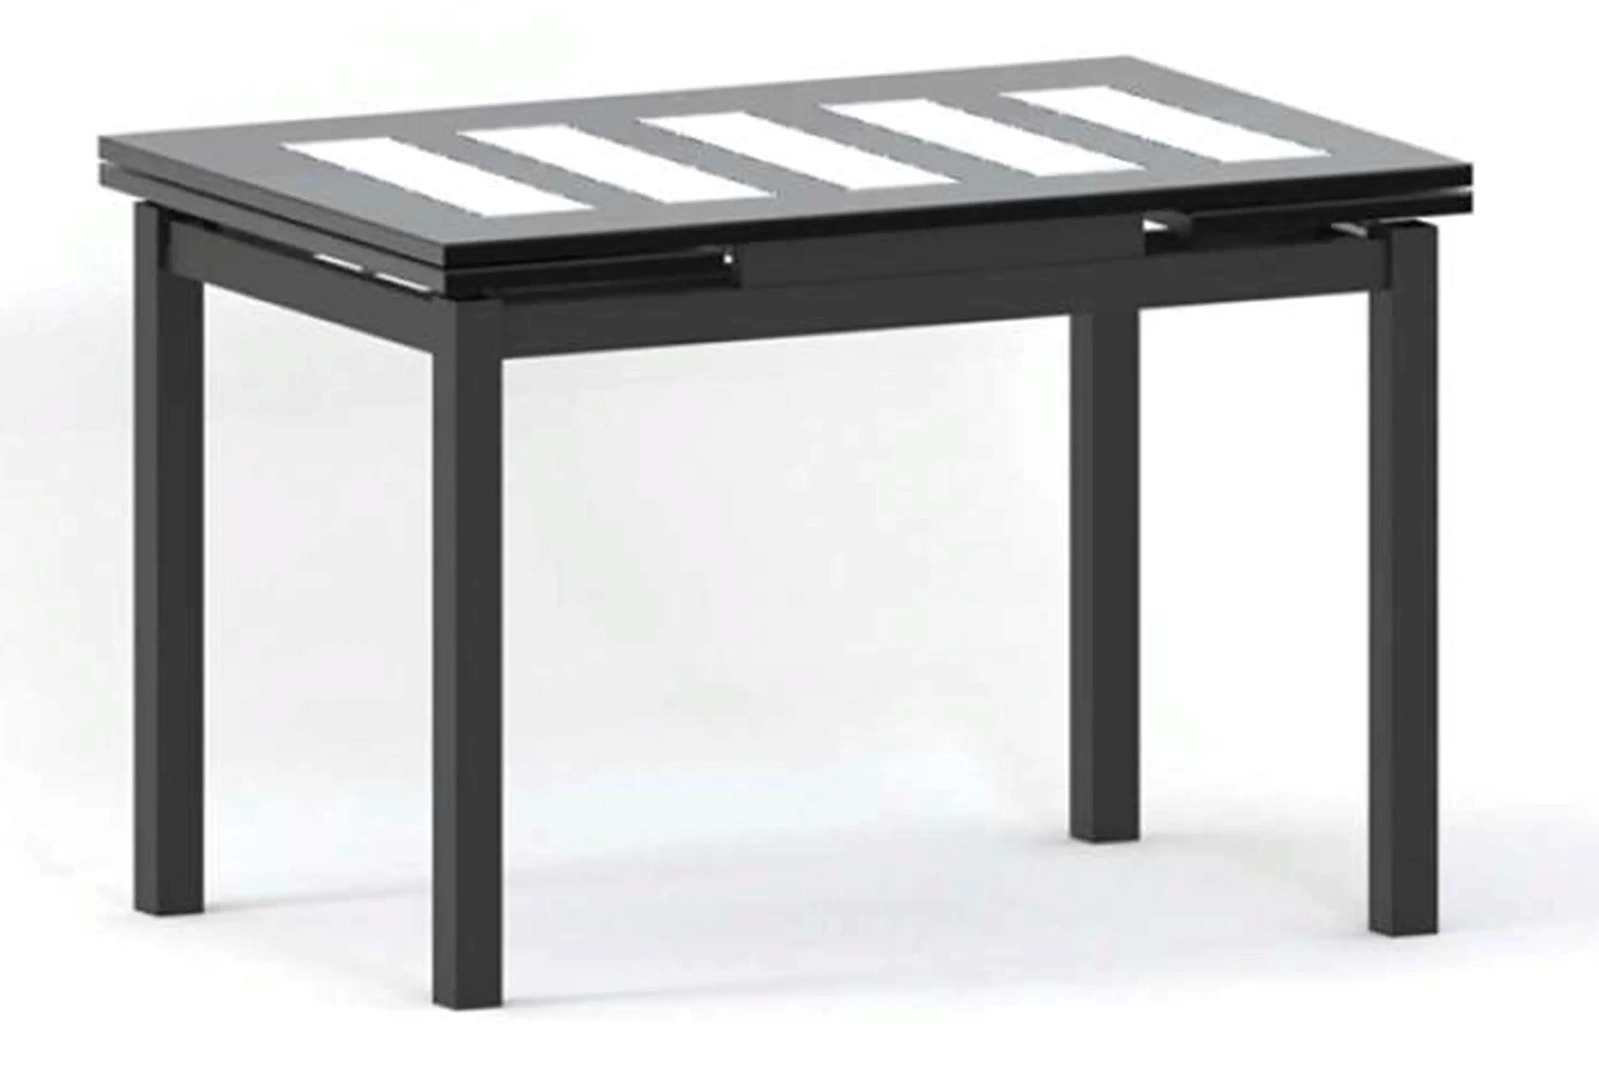 ДАЛАСИ-2 ТРЕНД стол раскладной 120/180 см (стекло)